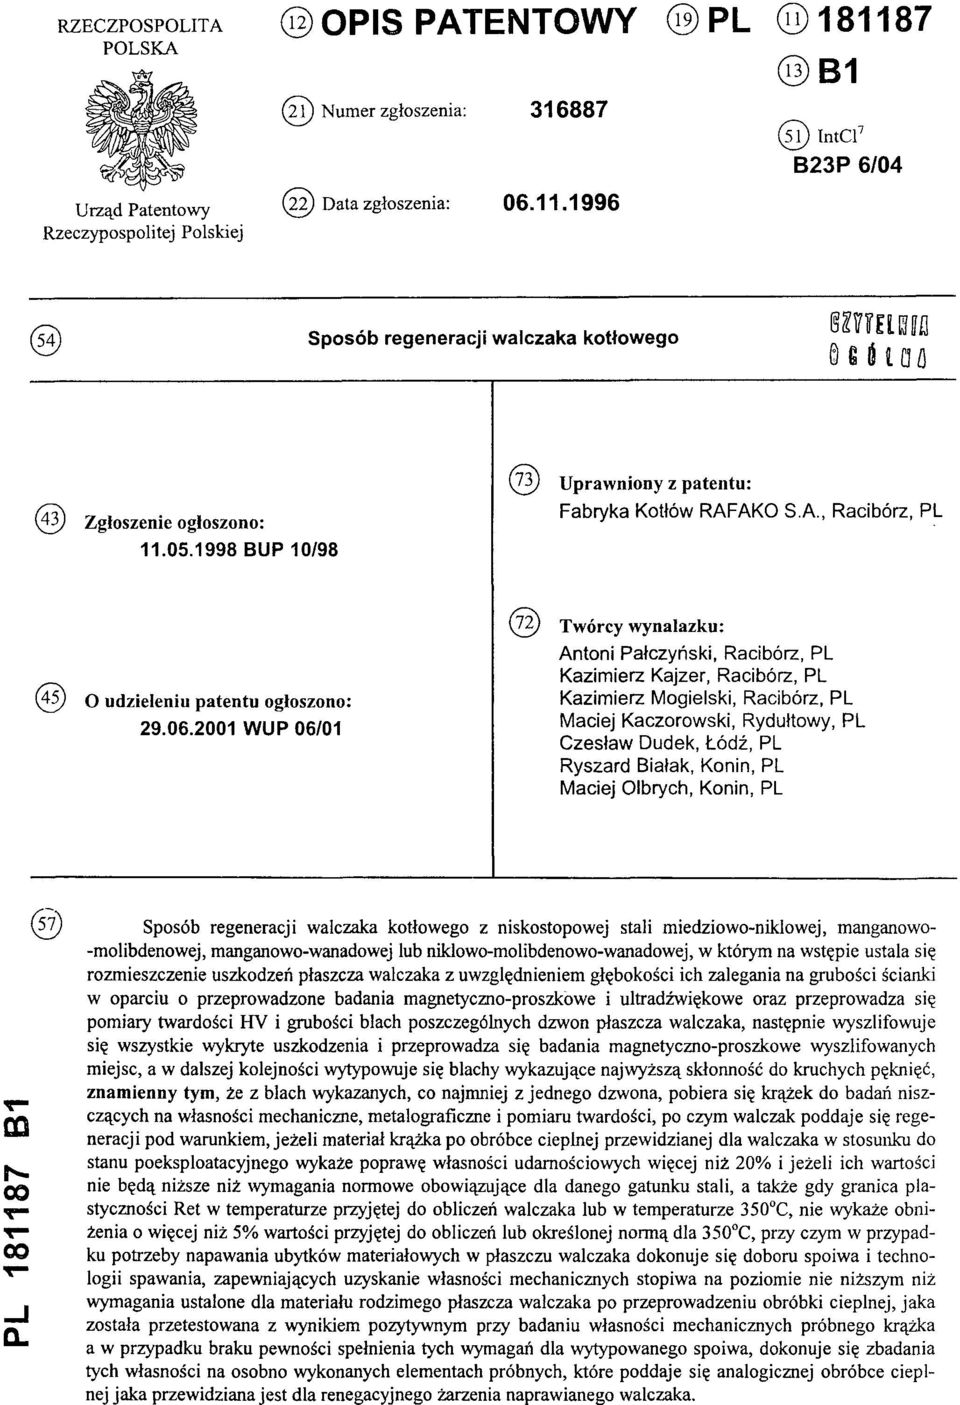 1998 BUP 10/98 (73) U praw niony z patentu: Fabryka Kotłów RAFAKO S.A., Racibórz, PL (45) O udzieleniu patentu ogłoszono: 29.06.